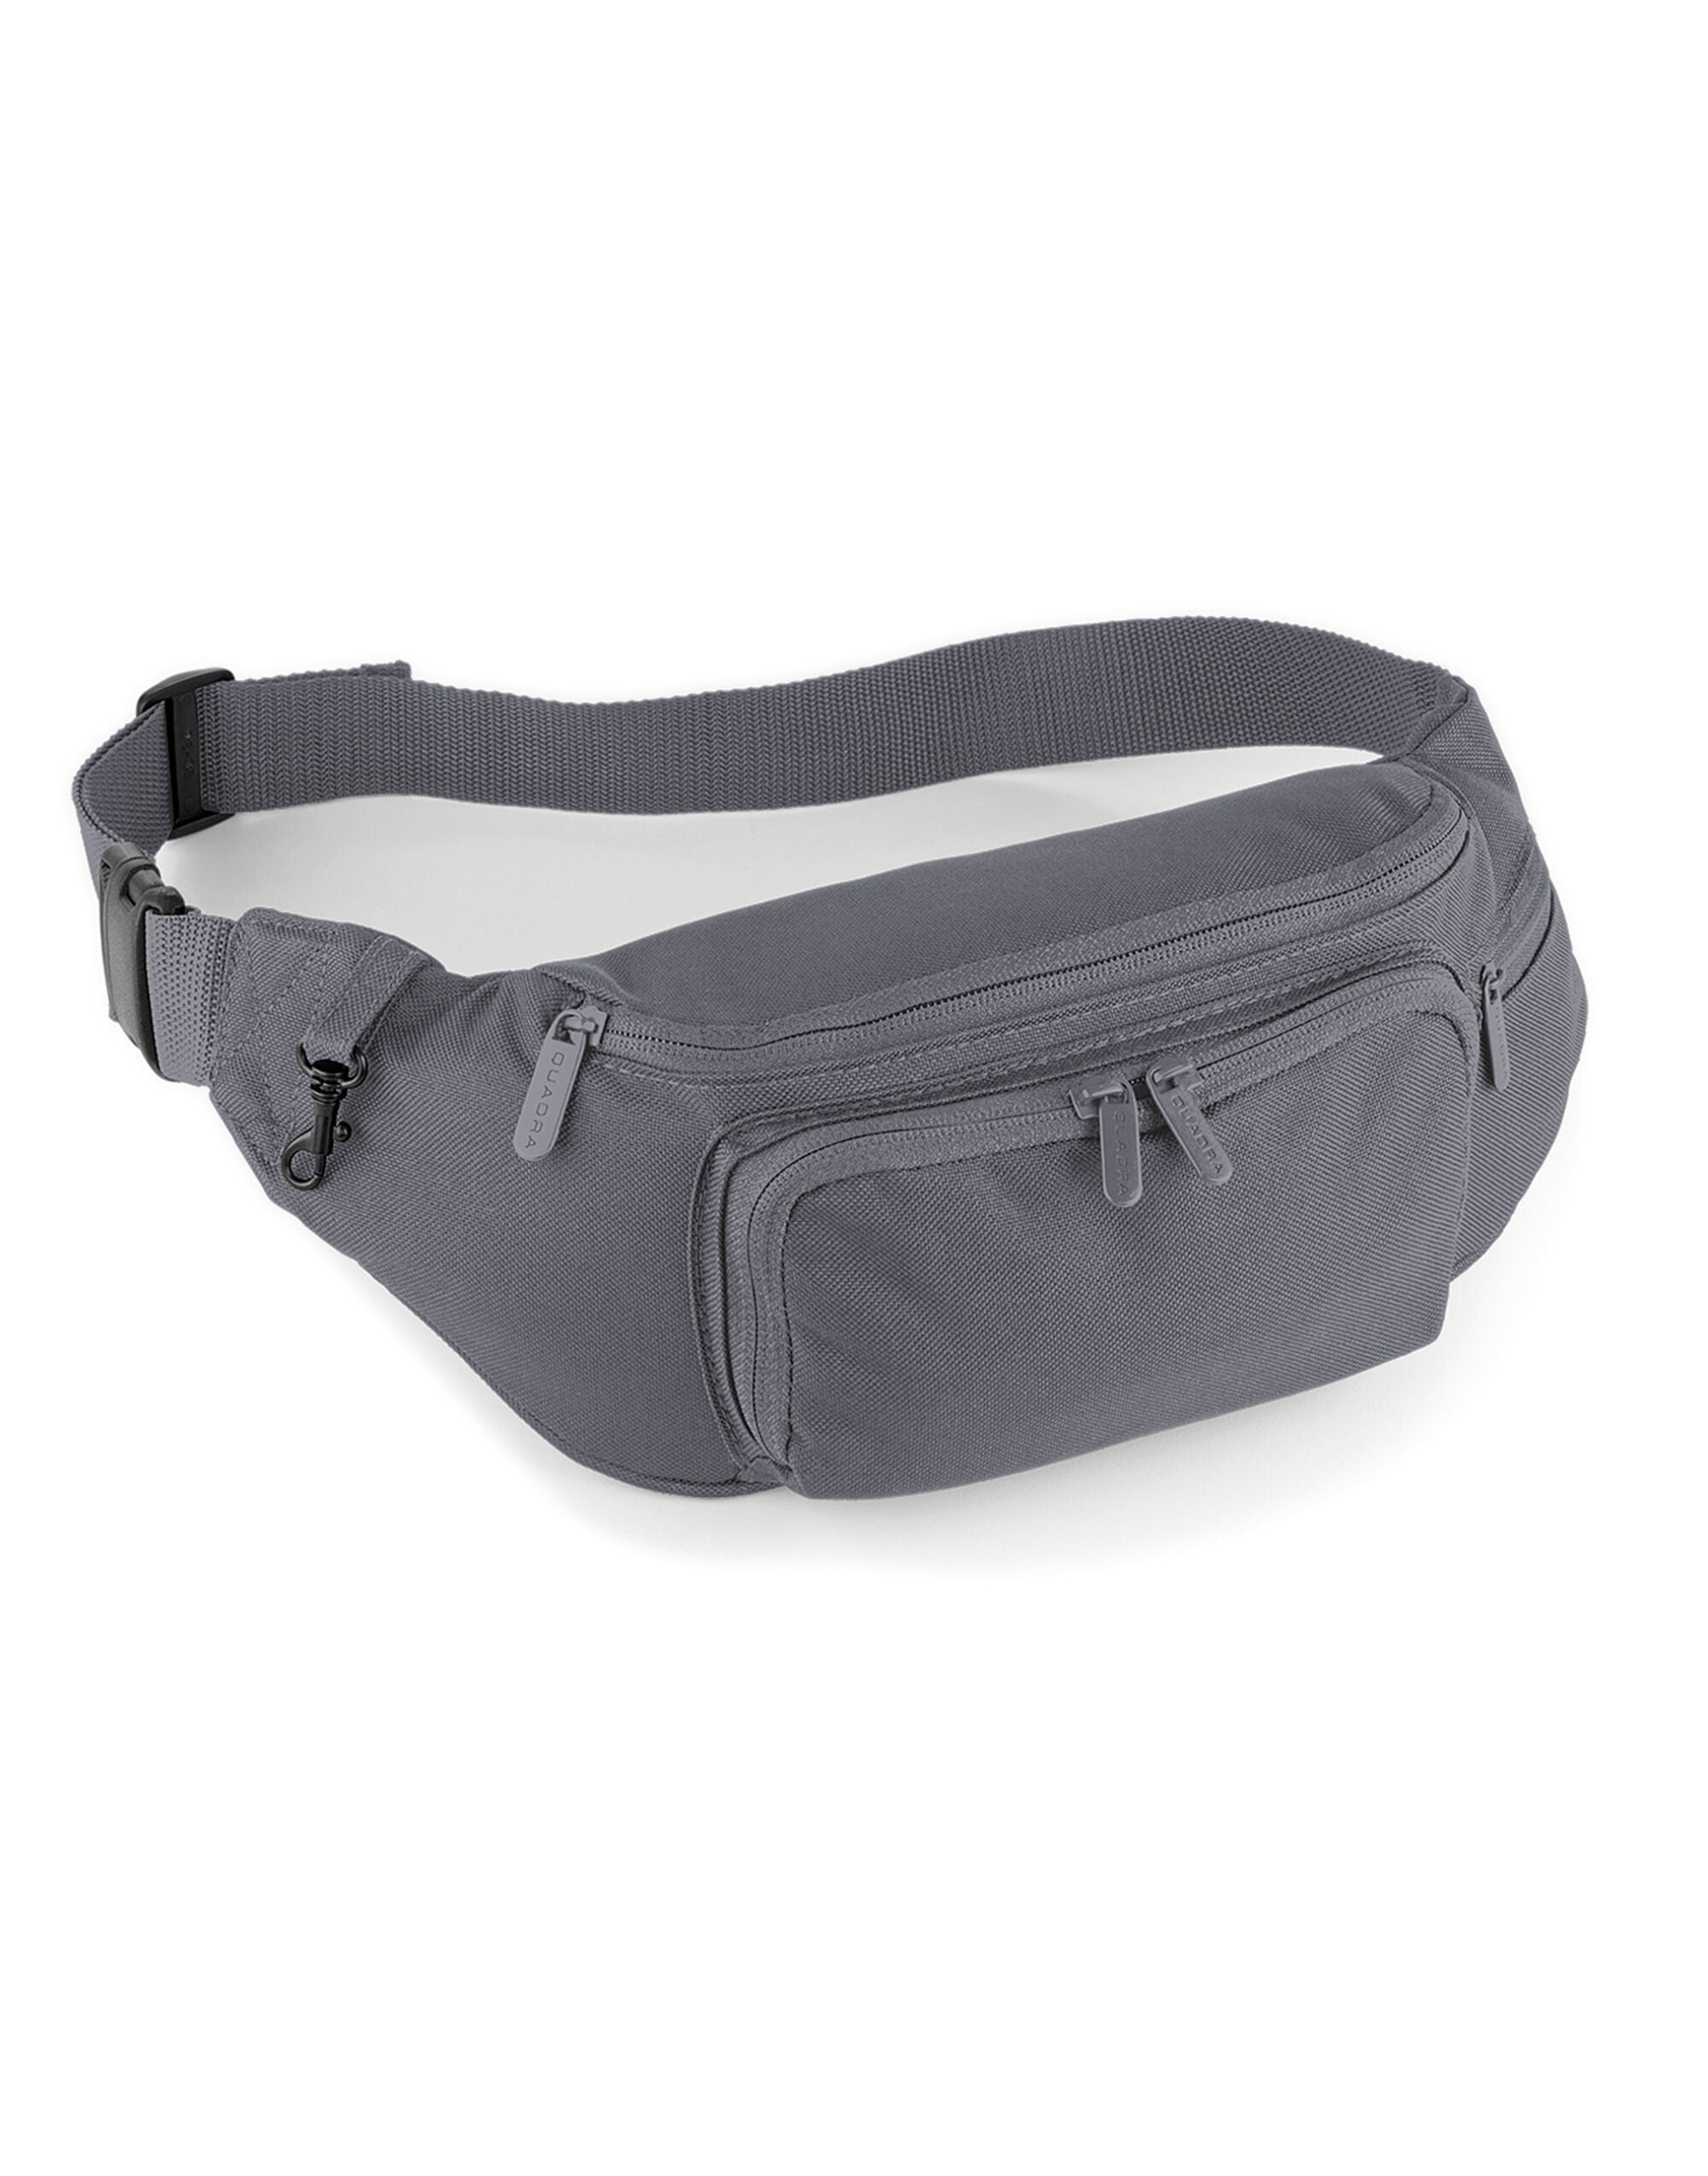 Quadra Belt Bag Adjustable webbing (QD12)